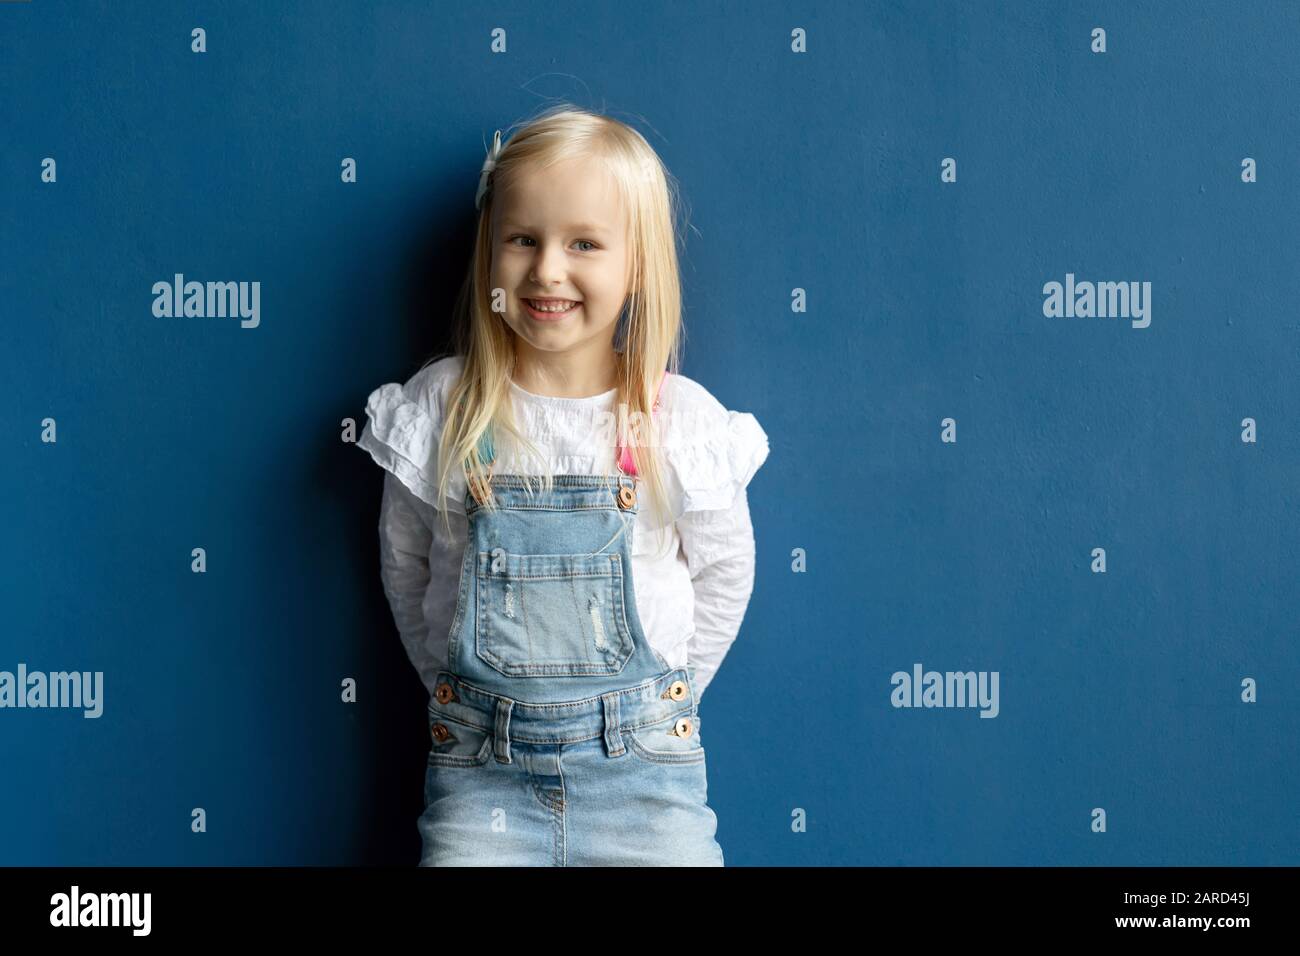 Glücklich Kleinkind hübsches Mädchen lächelnd, während posiert auf blauem Hintergrund Stockfoto